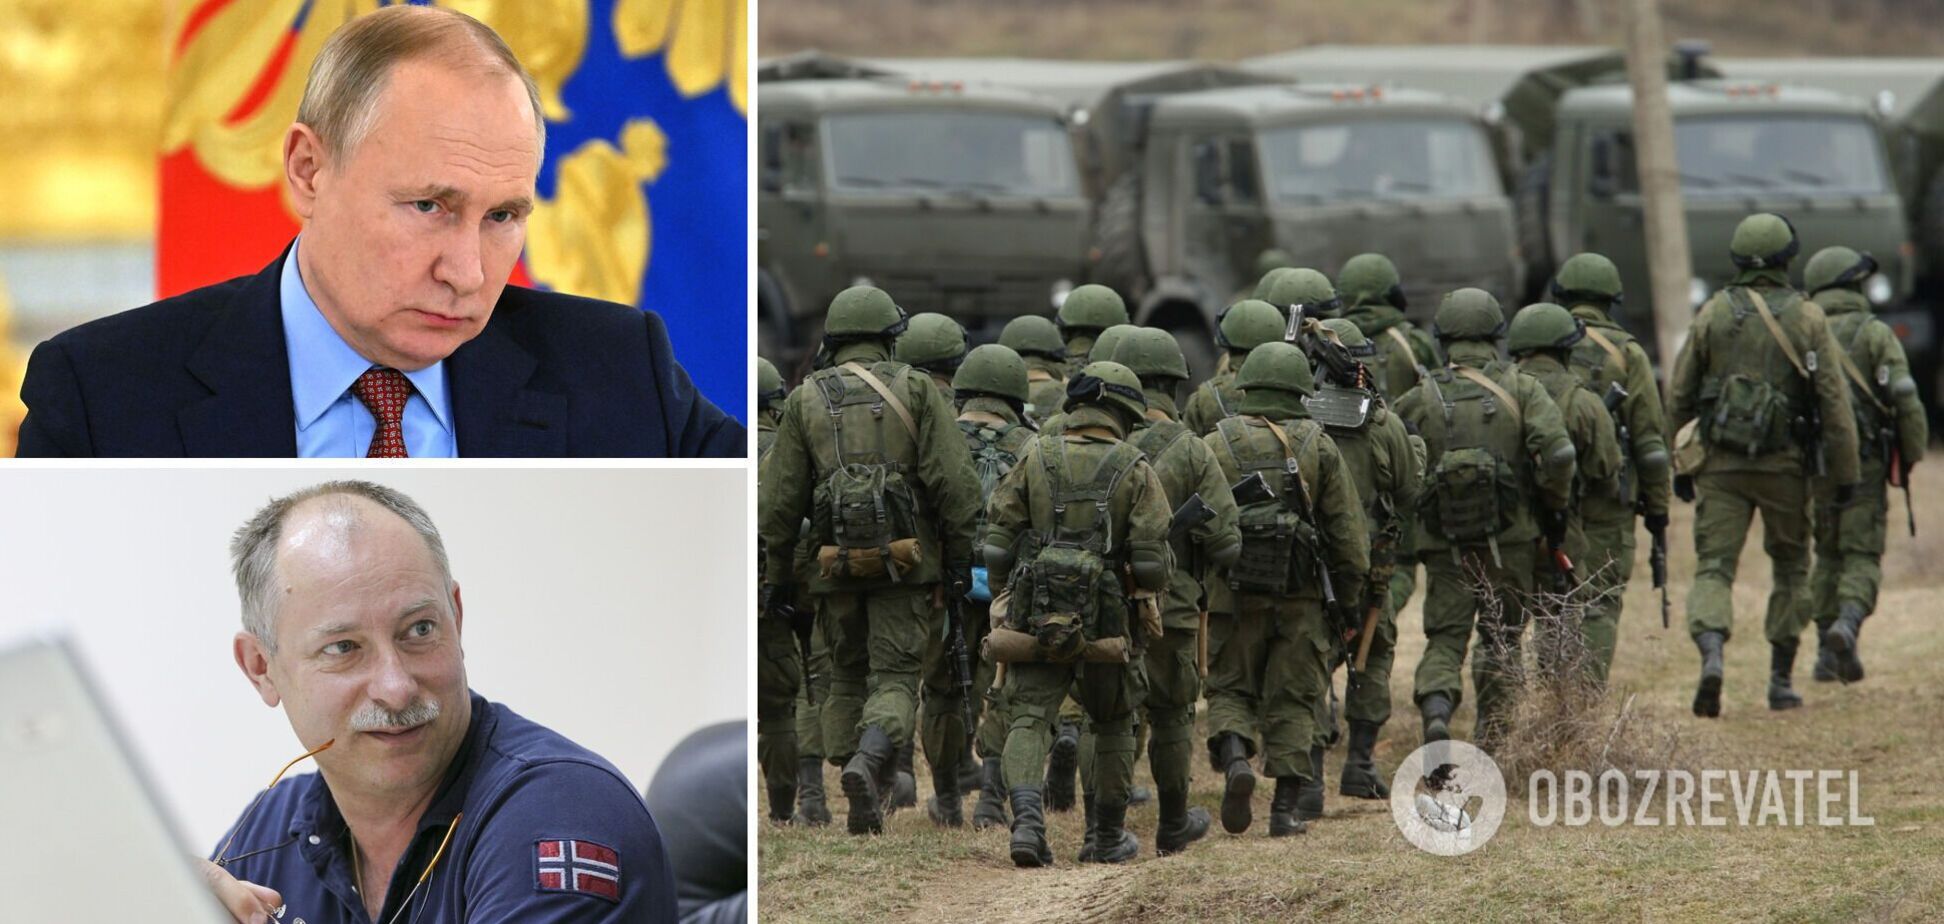 Жданов: Запад использует Украину для давления на Россию, но Путину не дадут нажать на кнопку войны